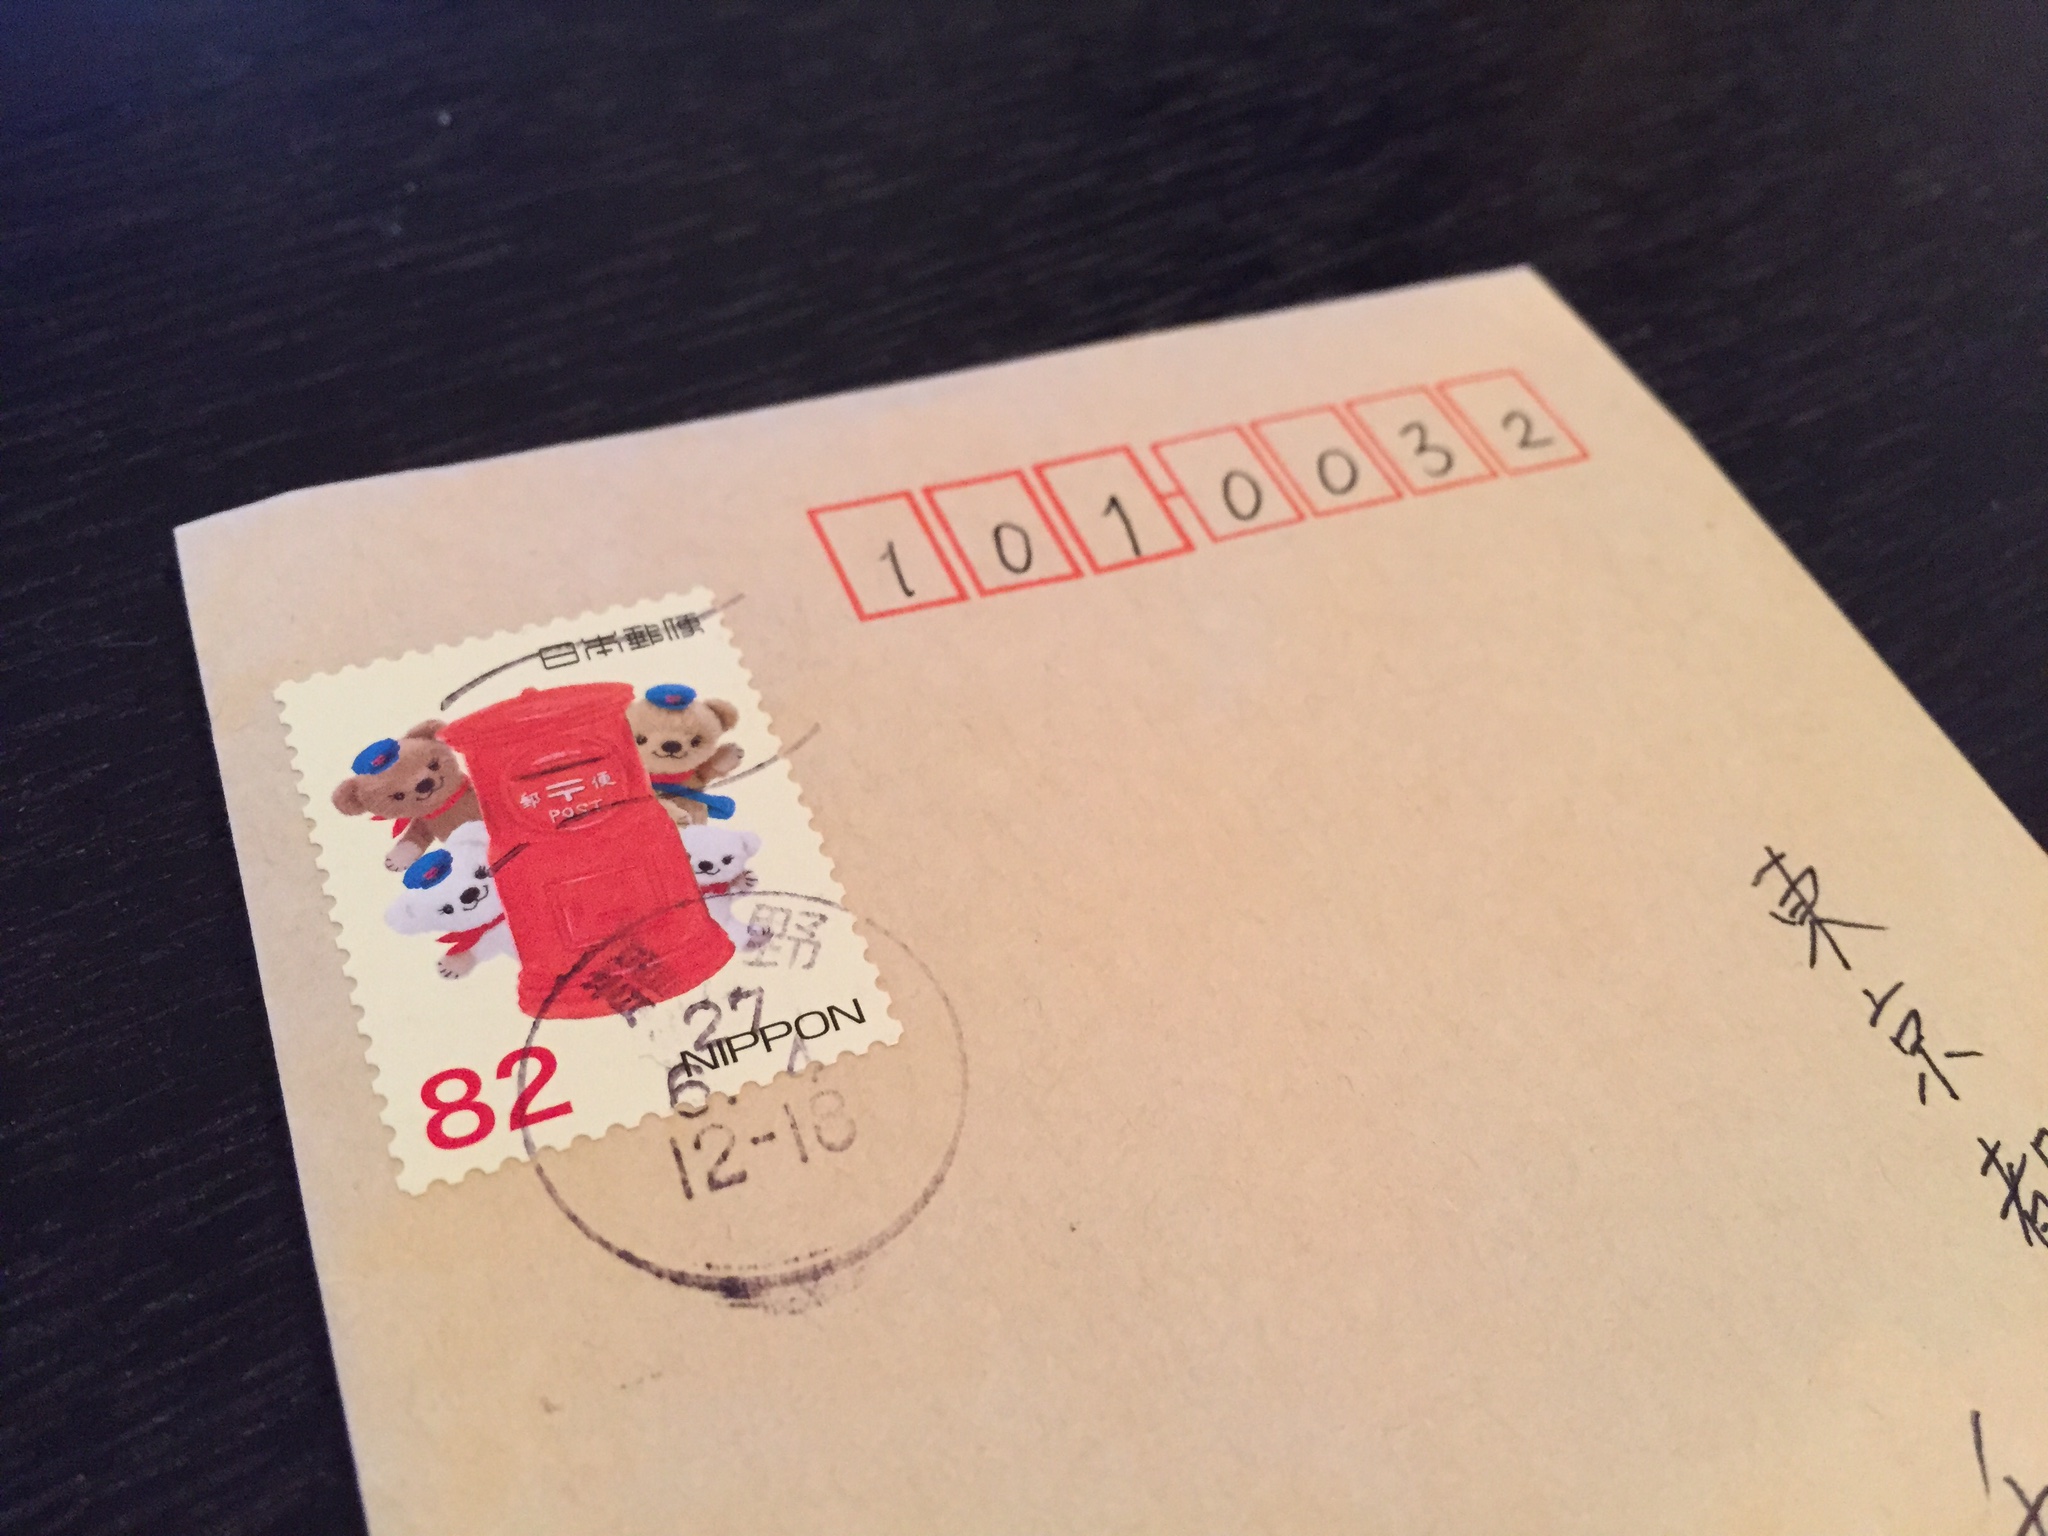 普通郵便に切手を貼ってポストに投函して出す方法 トリセド